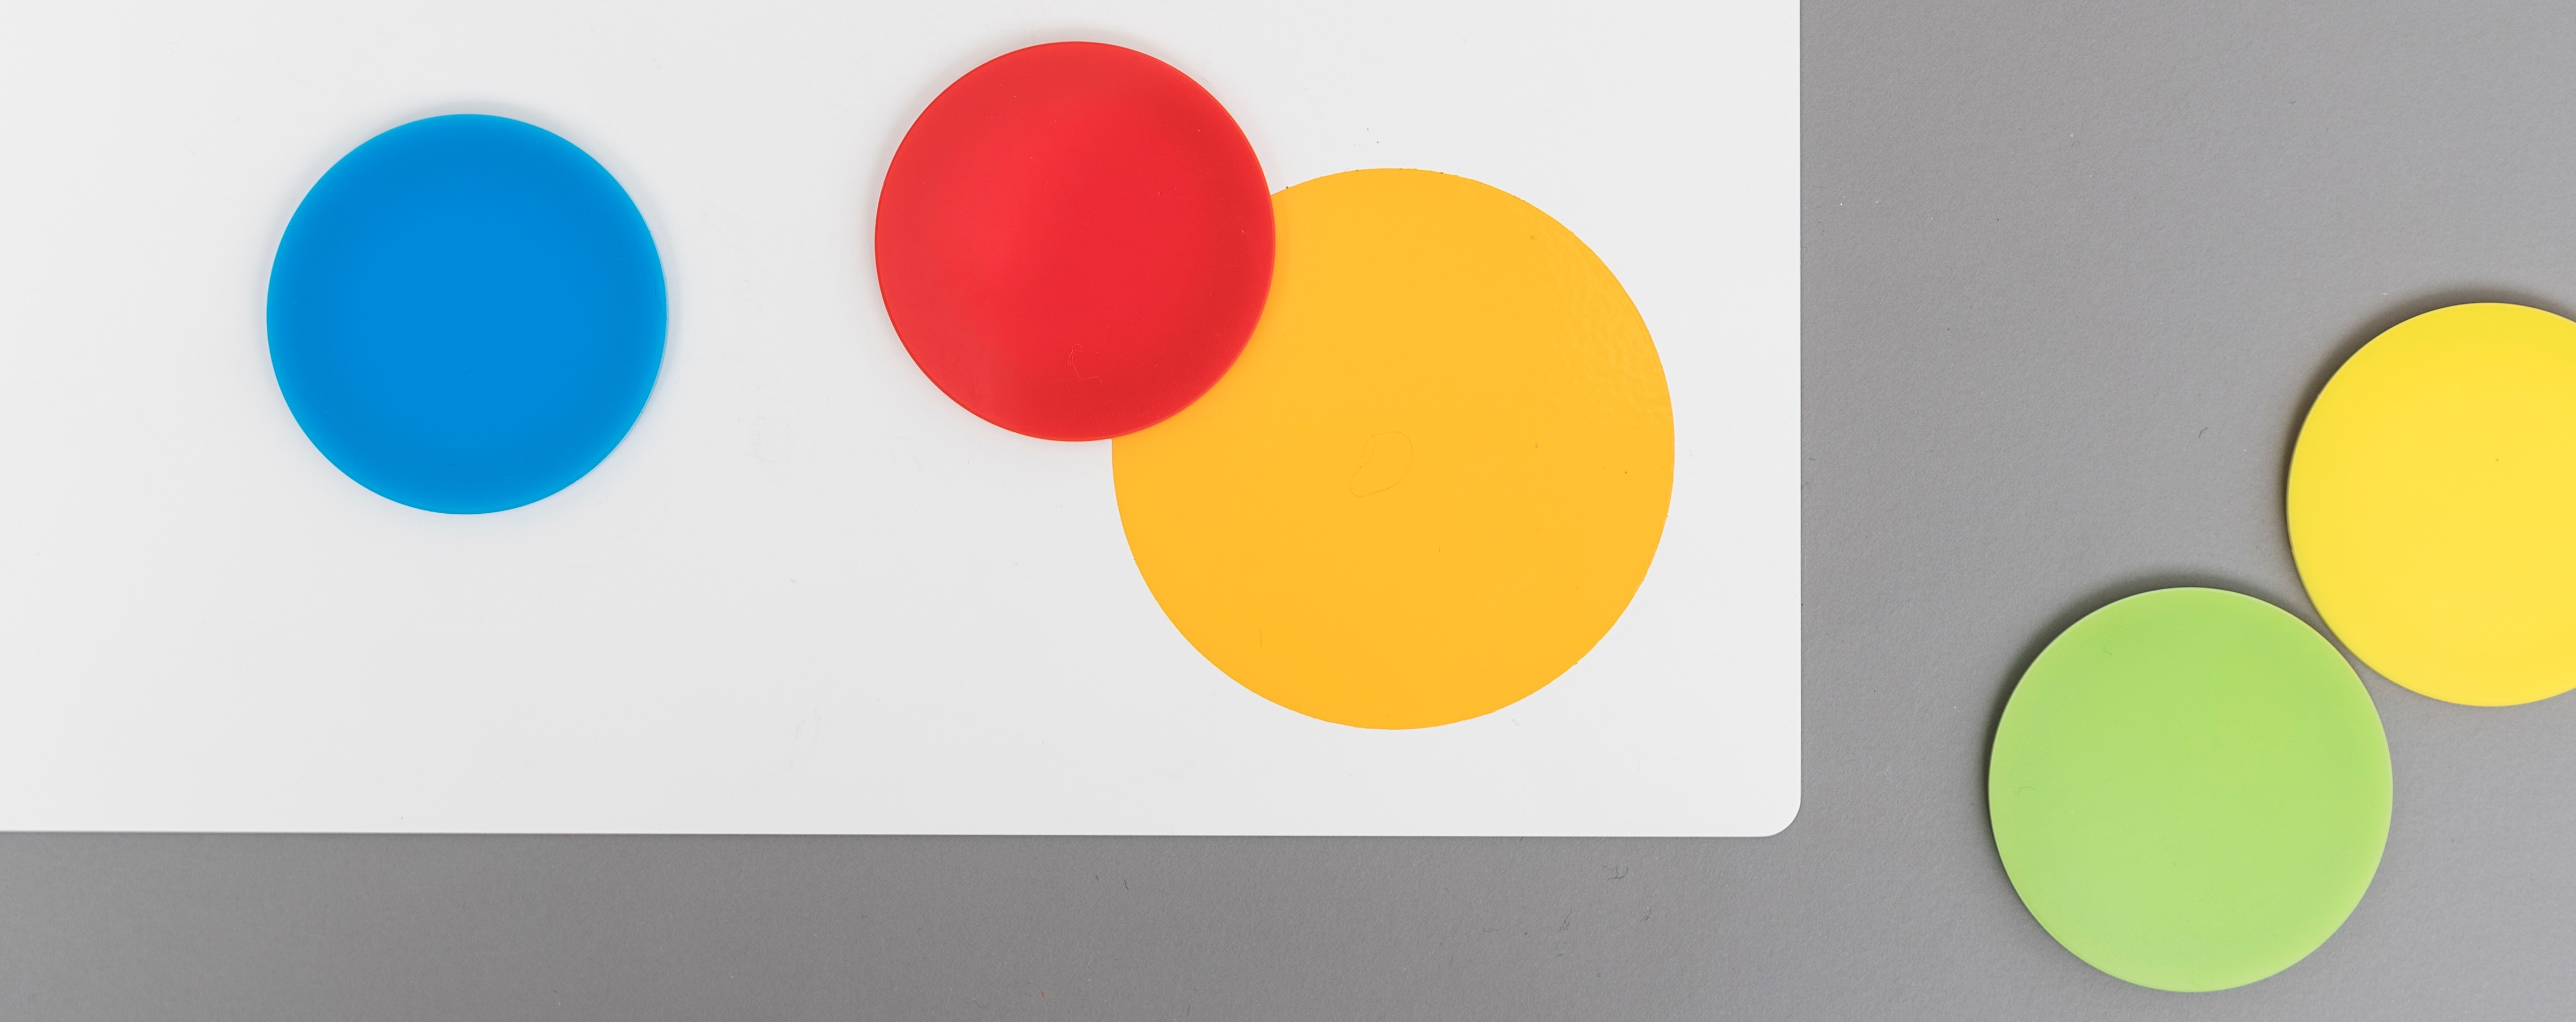 prism Instrument - Platte mit farbigen, runden Magneten